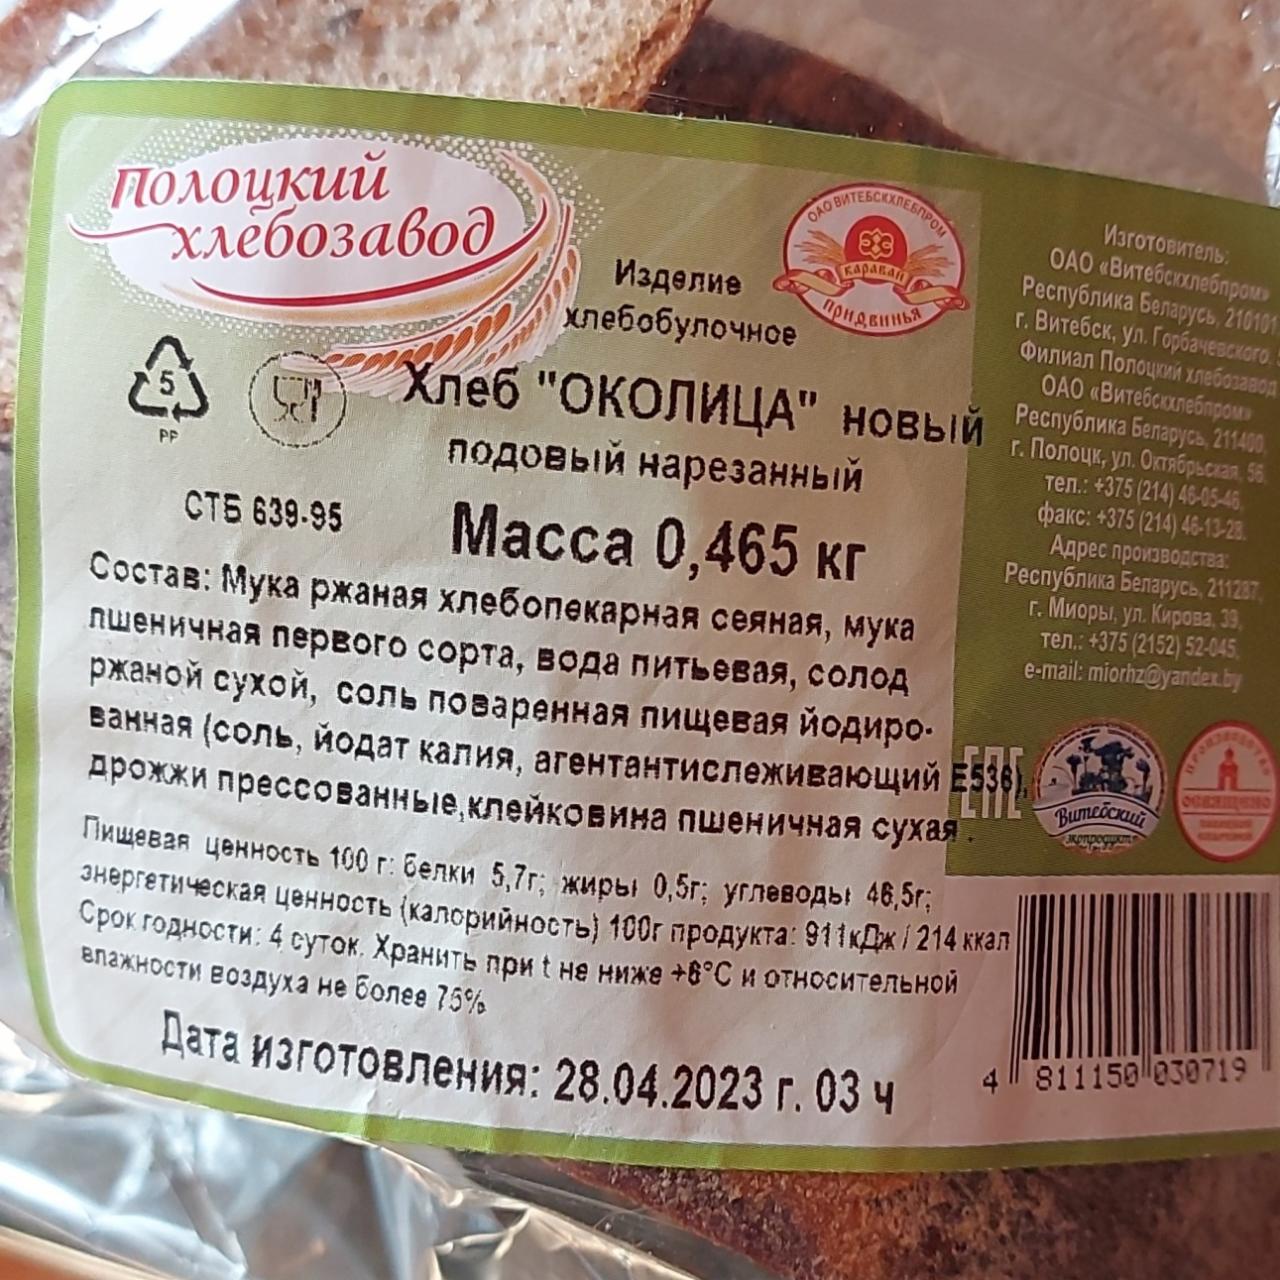 Фото - хлеб Околица новый Полоцкий хлебозавод